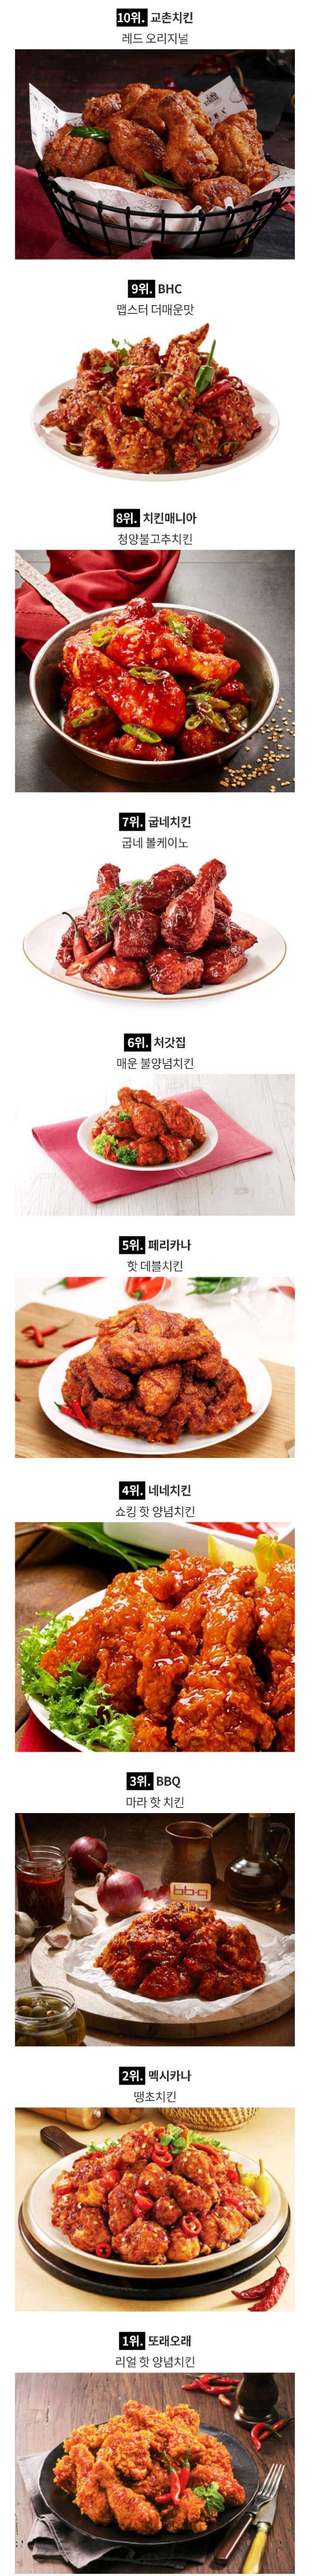 네티즌들이 뽑은 매운 치킨 순위....jpg | 인스티즈